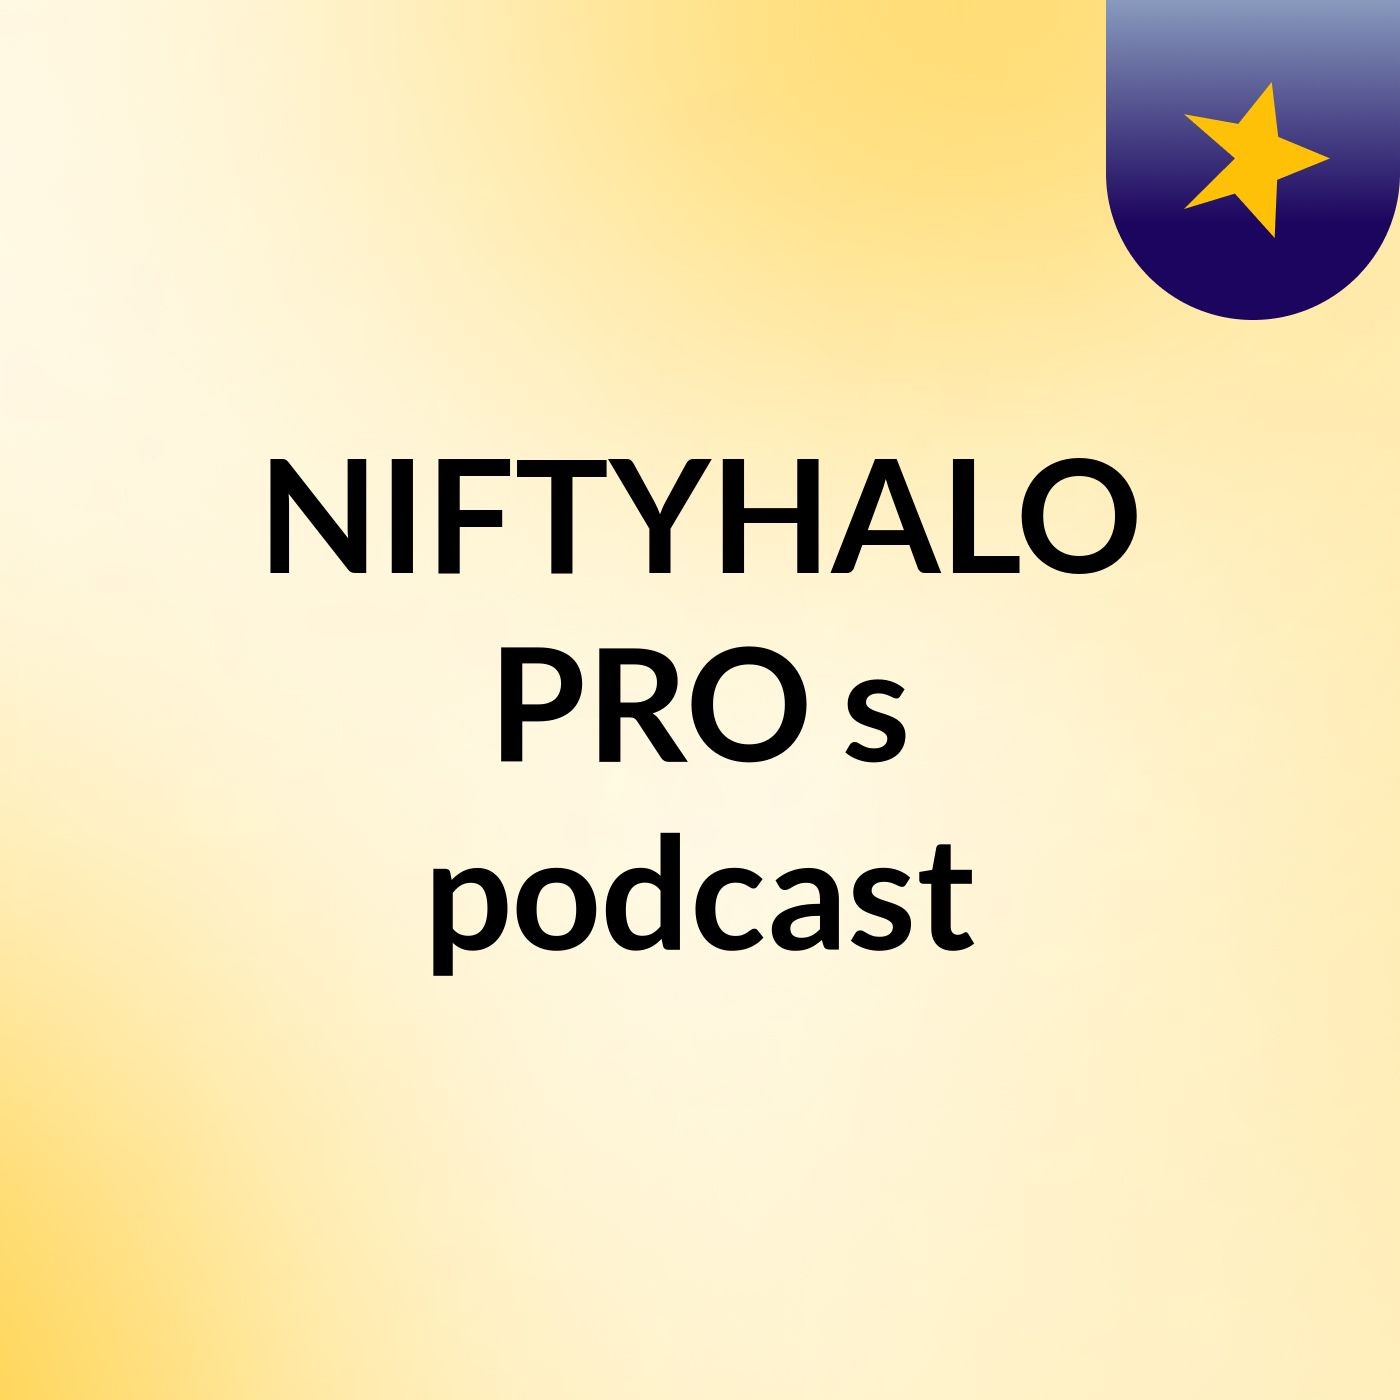 NIFTYHALO PRO's podcast